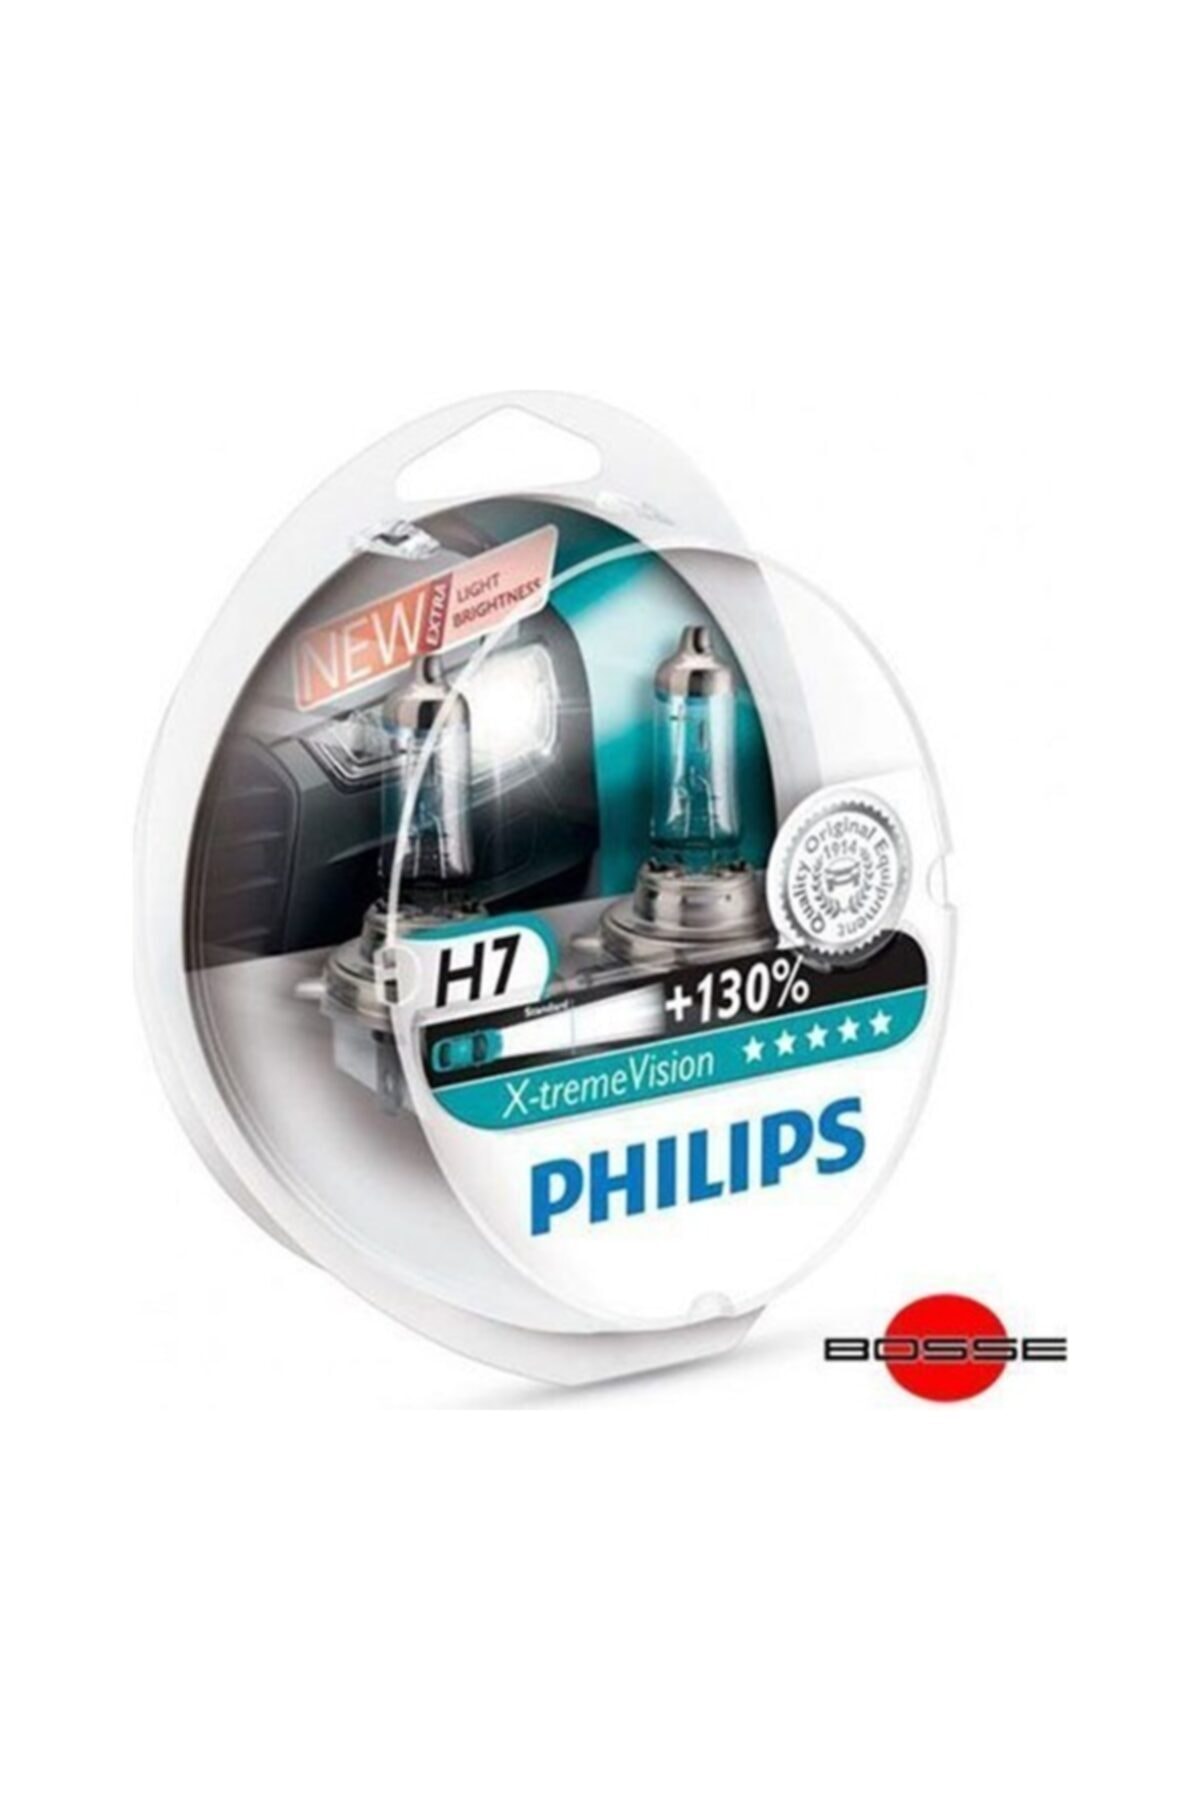 Nettedarikcisi Philips H7 X Treme Vision Far Ampülü %130 Fazla ışık